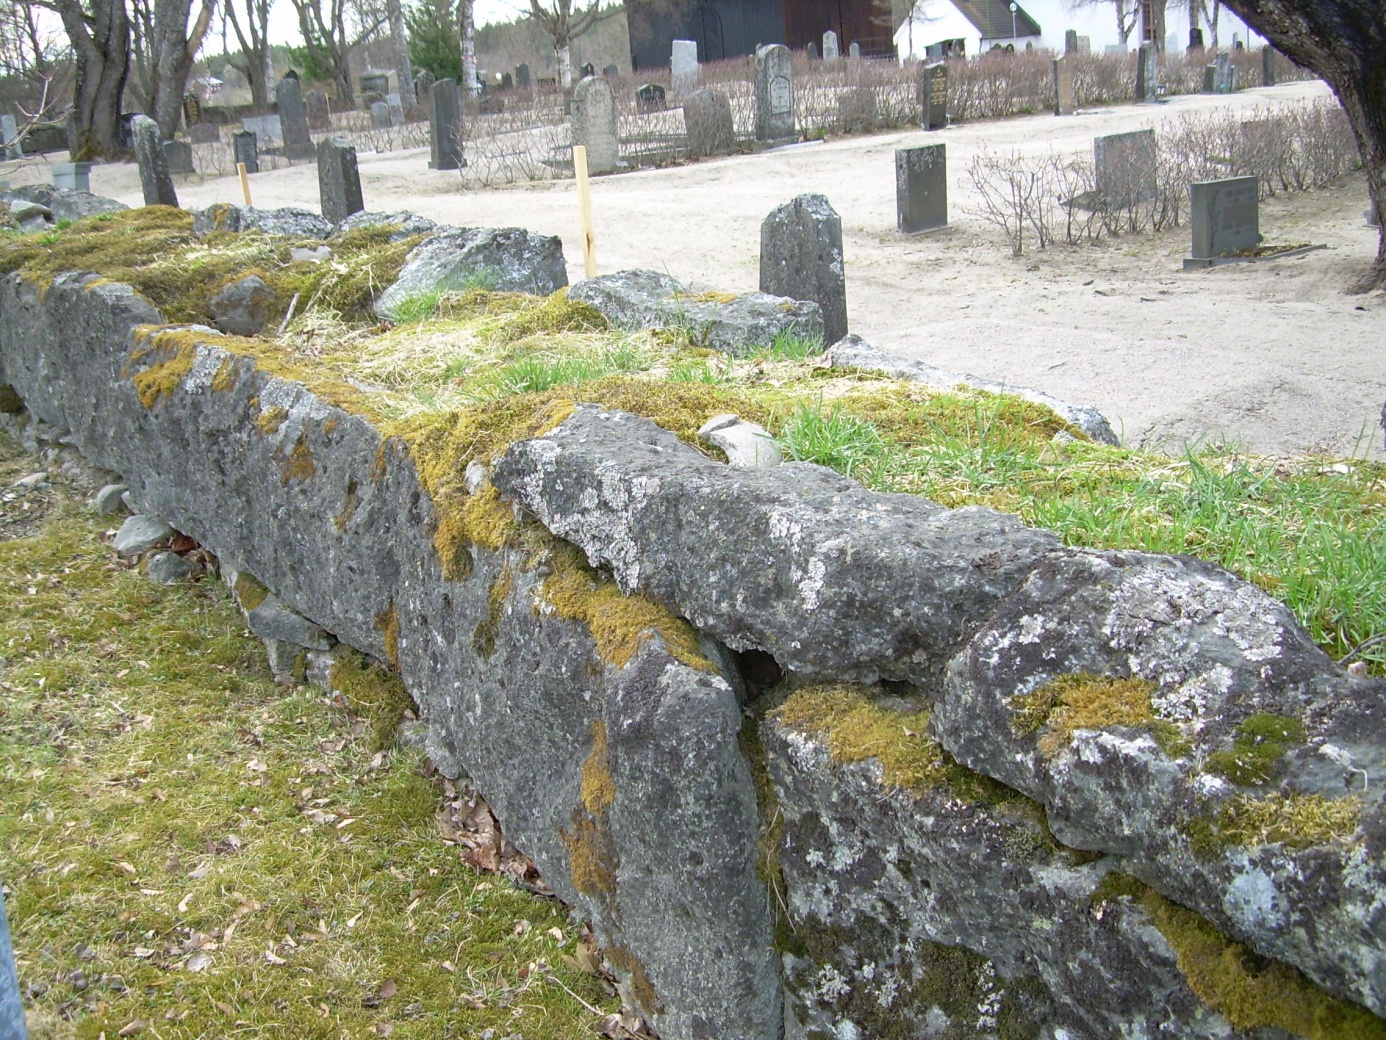 I norra delen av muren i närheten av klockstapeln finns en yngre grind vilken har blästrats och målats i svart kulör. Staket och grindar kring gravplatser samt gravkors har också målats i svart.